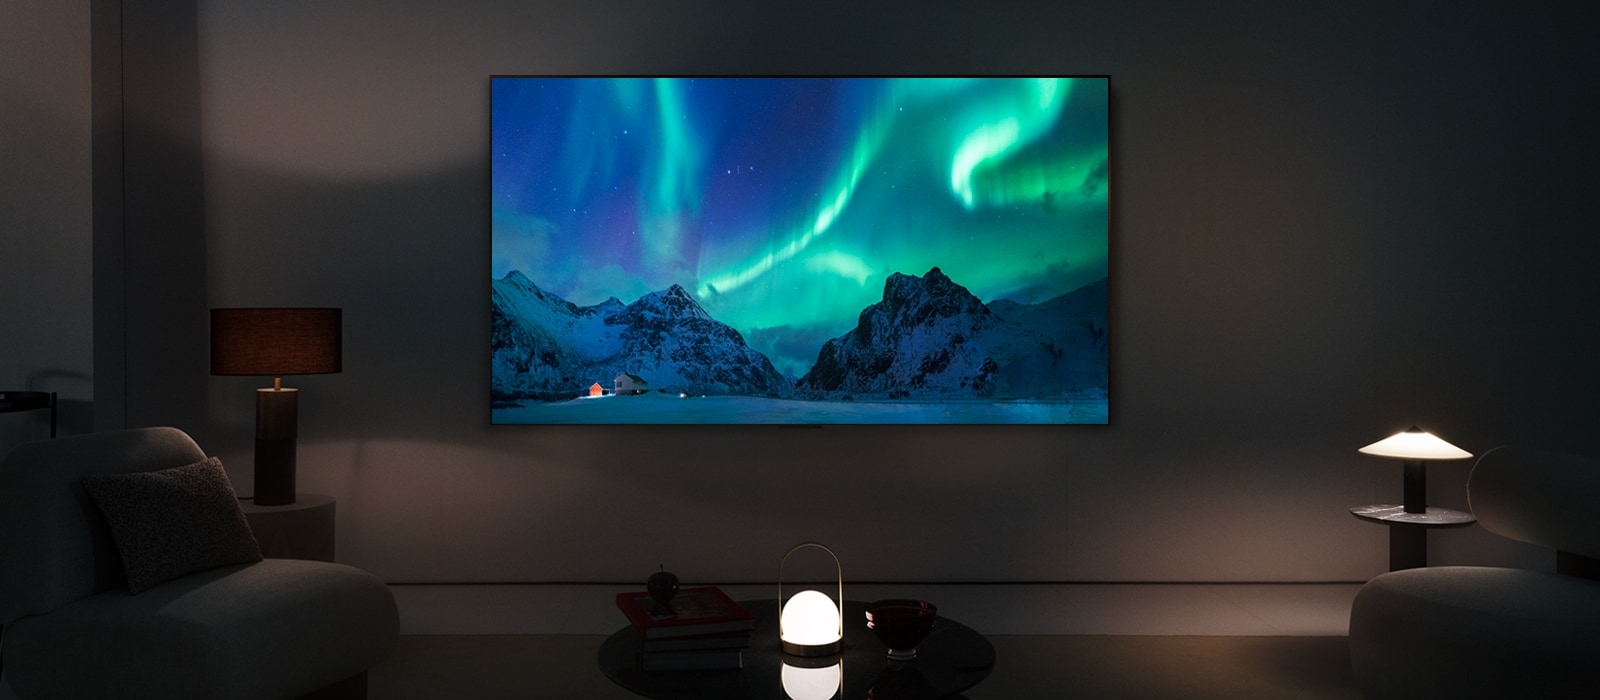 LG OLED TV v moderním obytném prostoru v noci. Na obrazovce se zobrazuje obraz polární záře s ideální úrovní jasu.